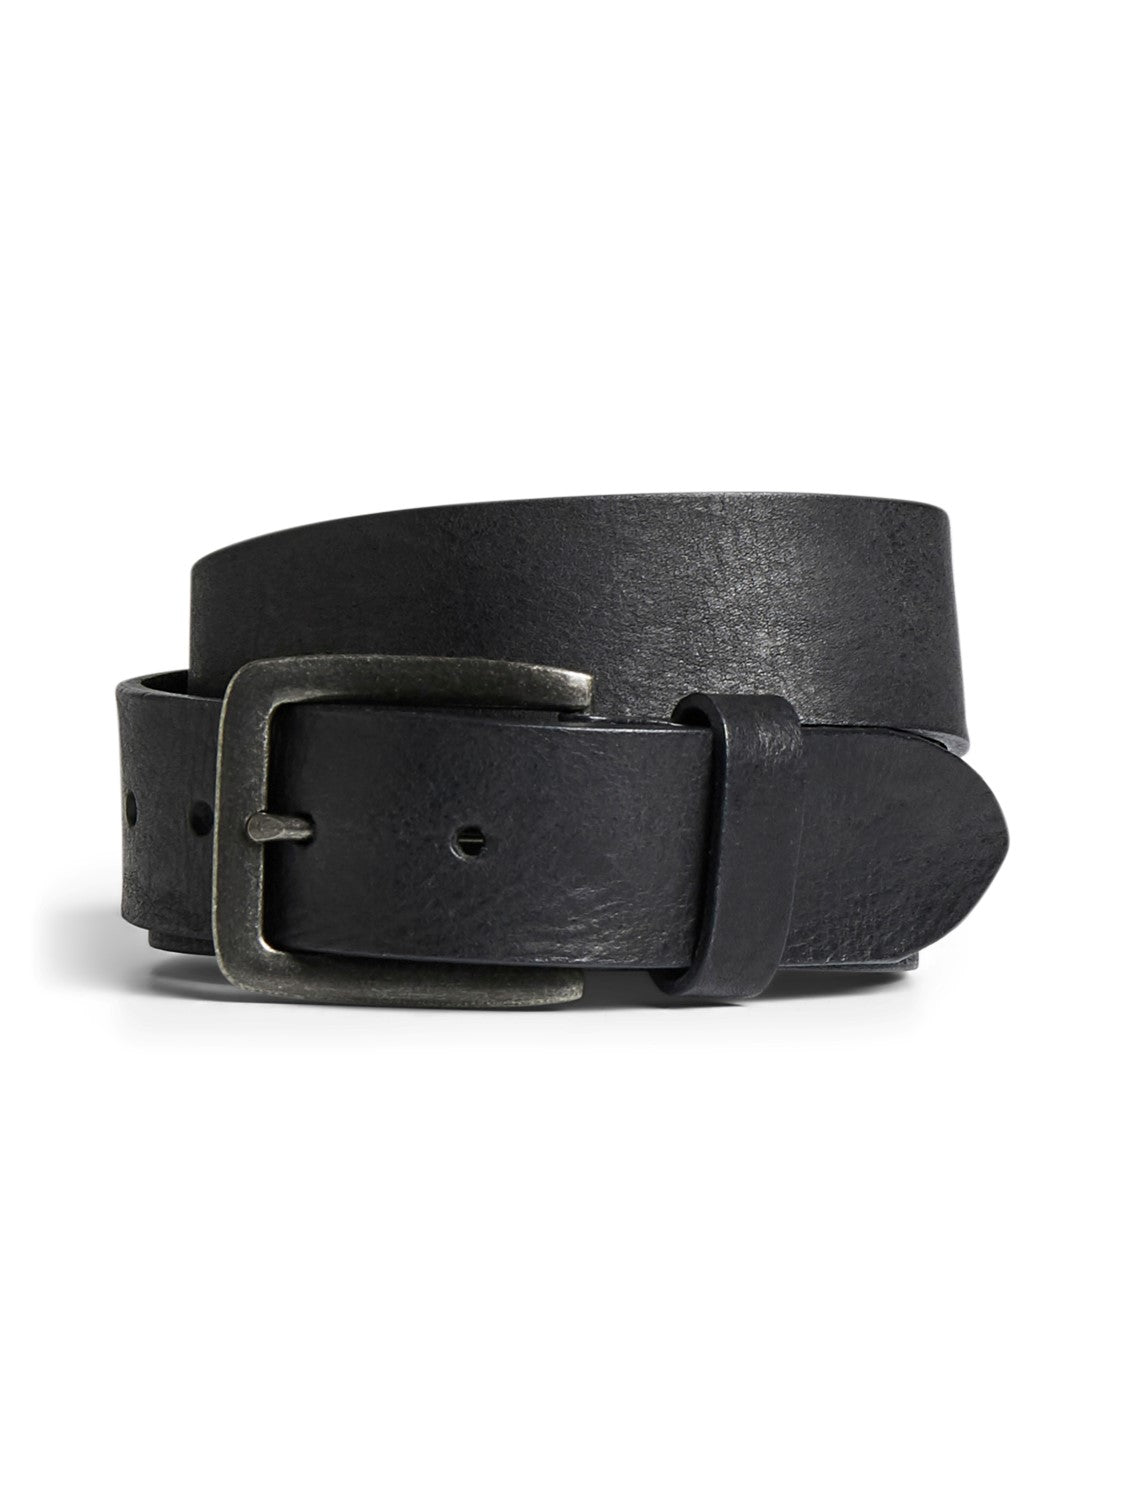 JACVICTOR Leather Belt